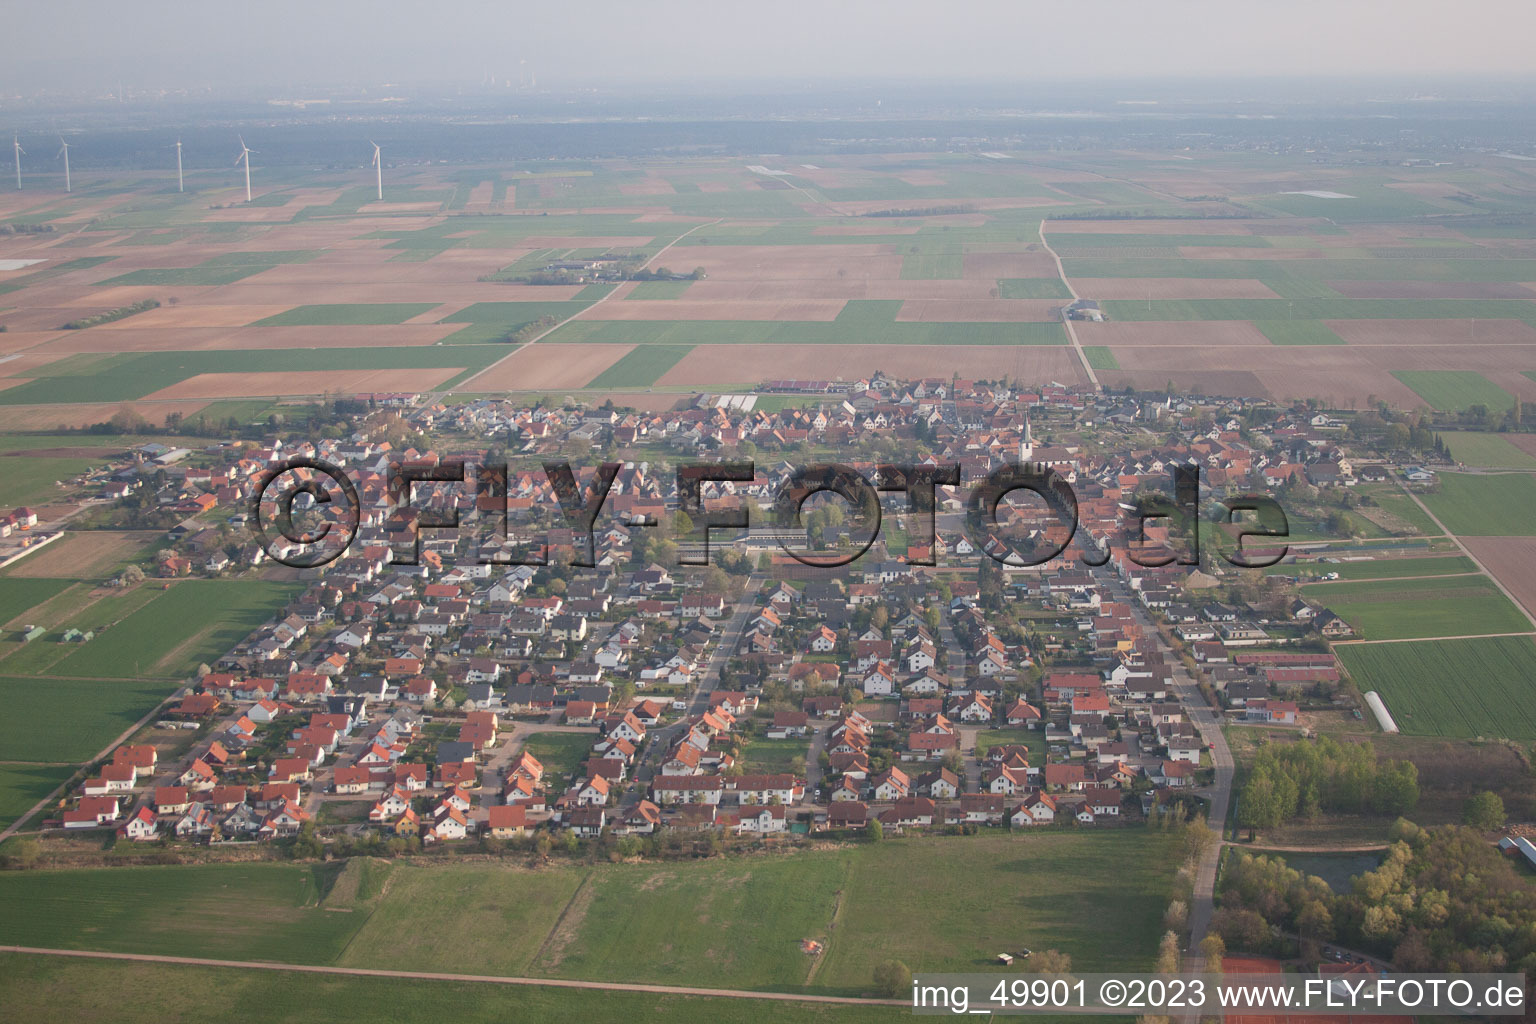 Ottersheim bei Landau im Bundesland Rheinland-Pfalz, Deutschland aus der Luft betrachtet